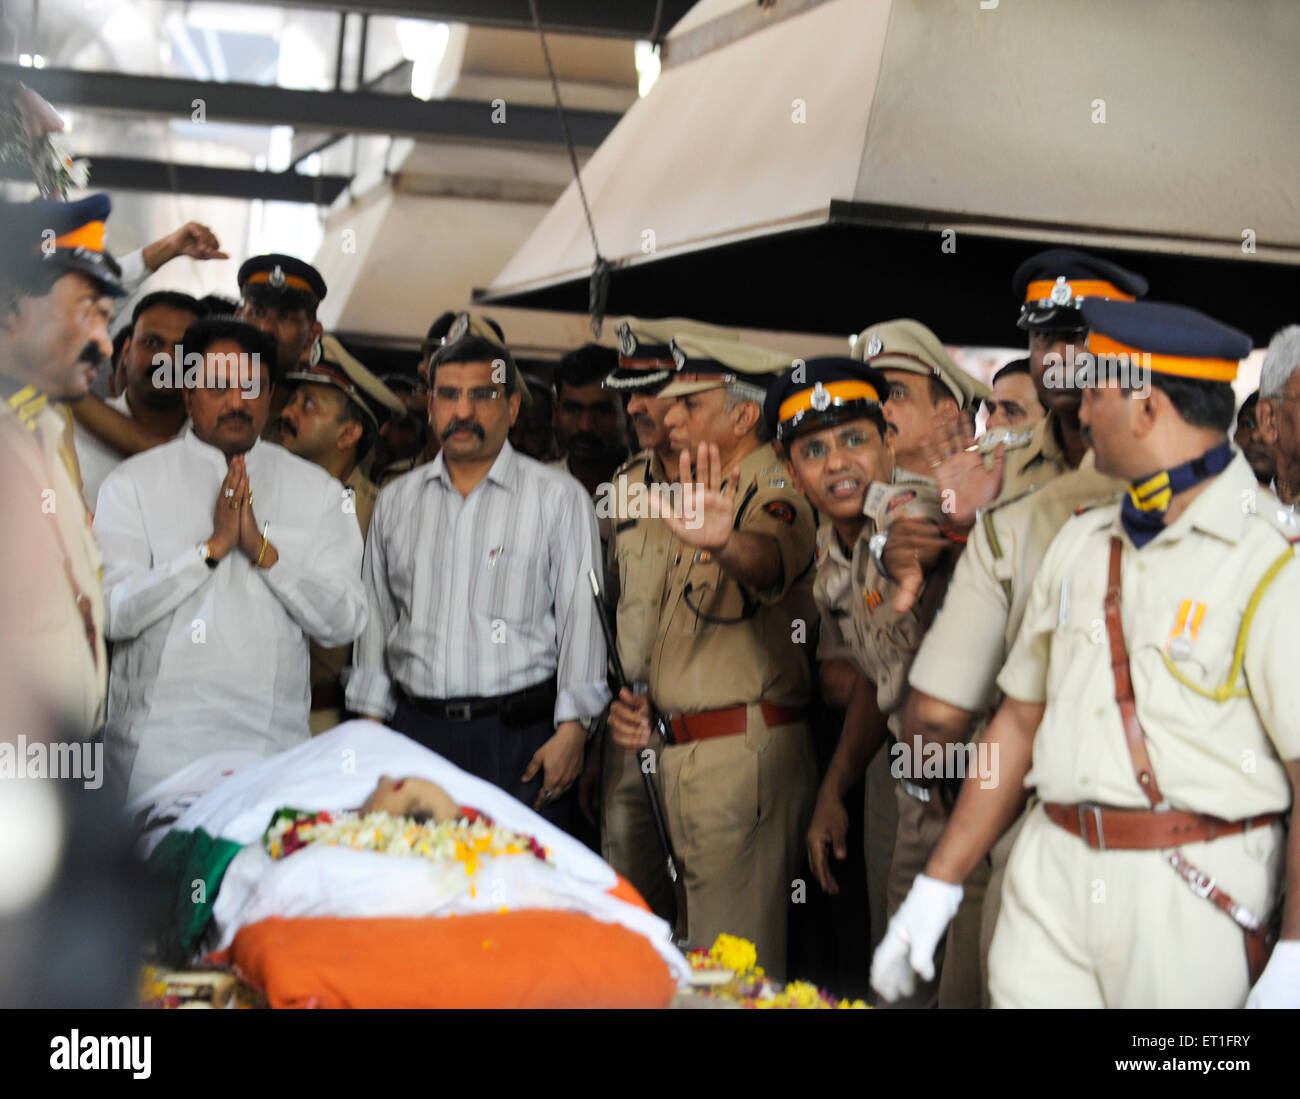 Cérémonie funéraire hindoue, Vilasrao Deshmukh, ministre en chef, Hemant Karkare, chef de l'équipe antiterroriste, a tué 2008 attentats de Bombay, Inde Banque D'Images